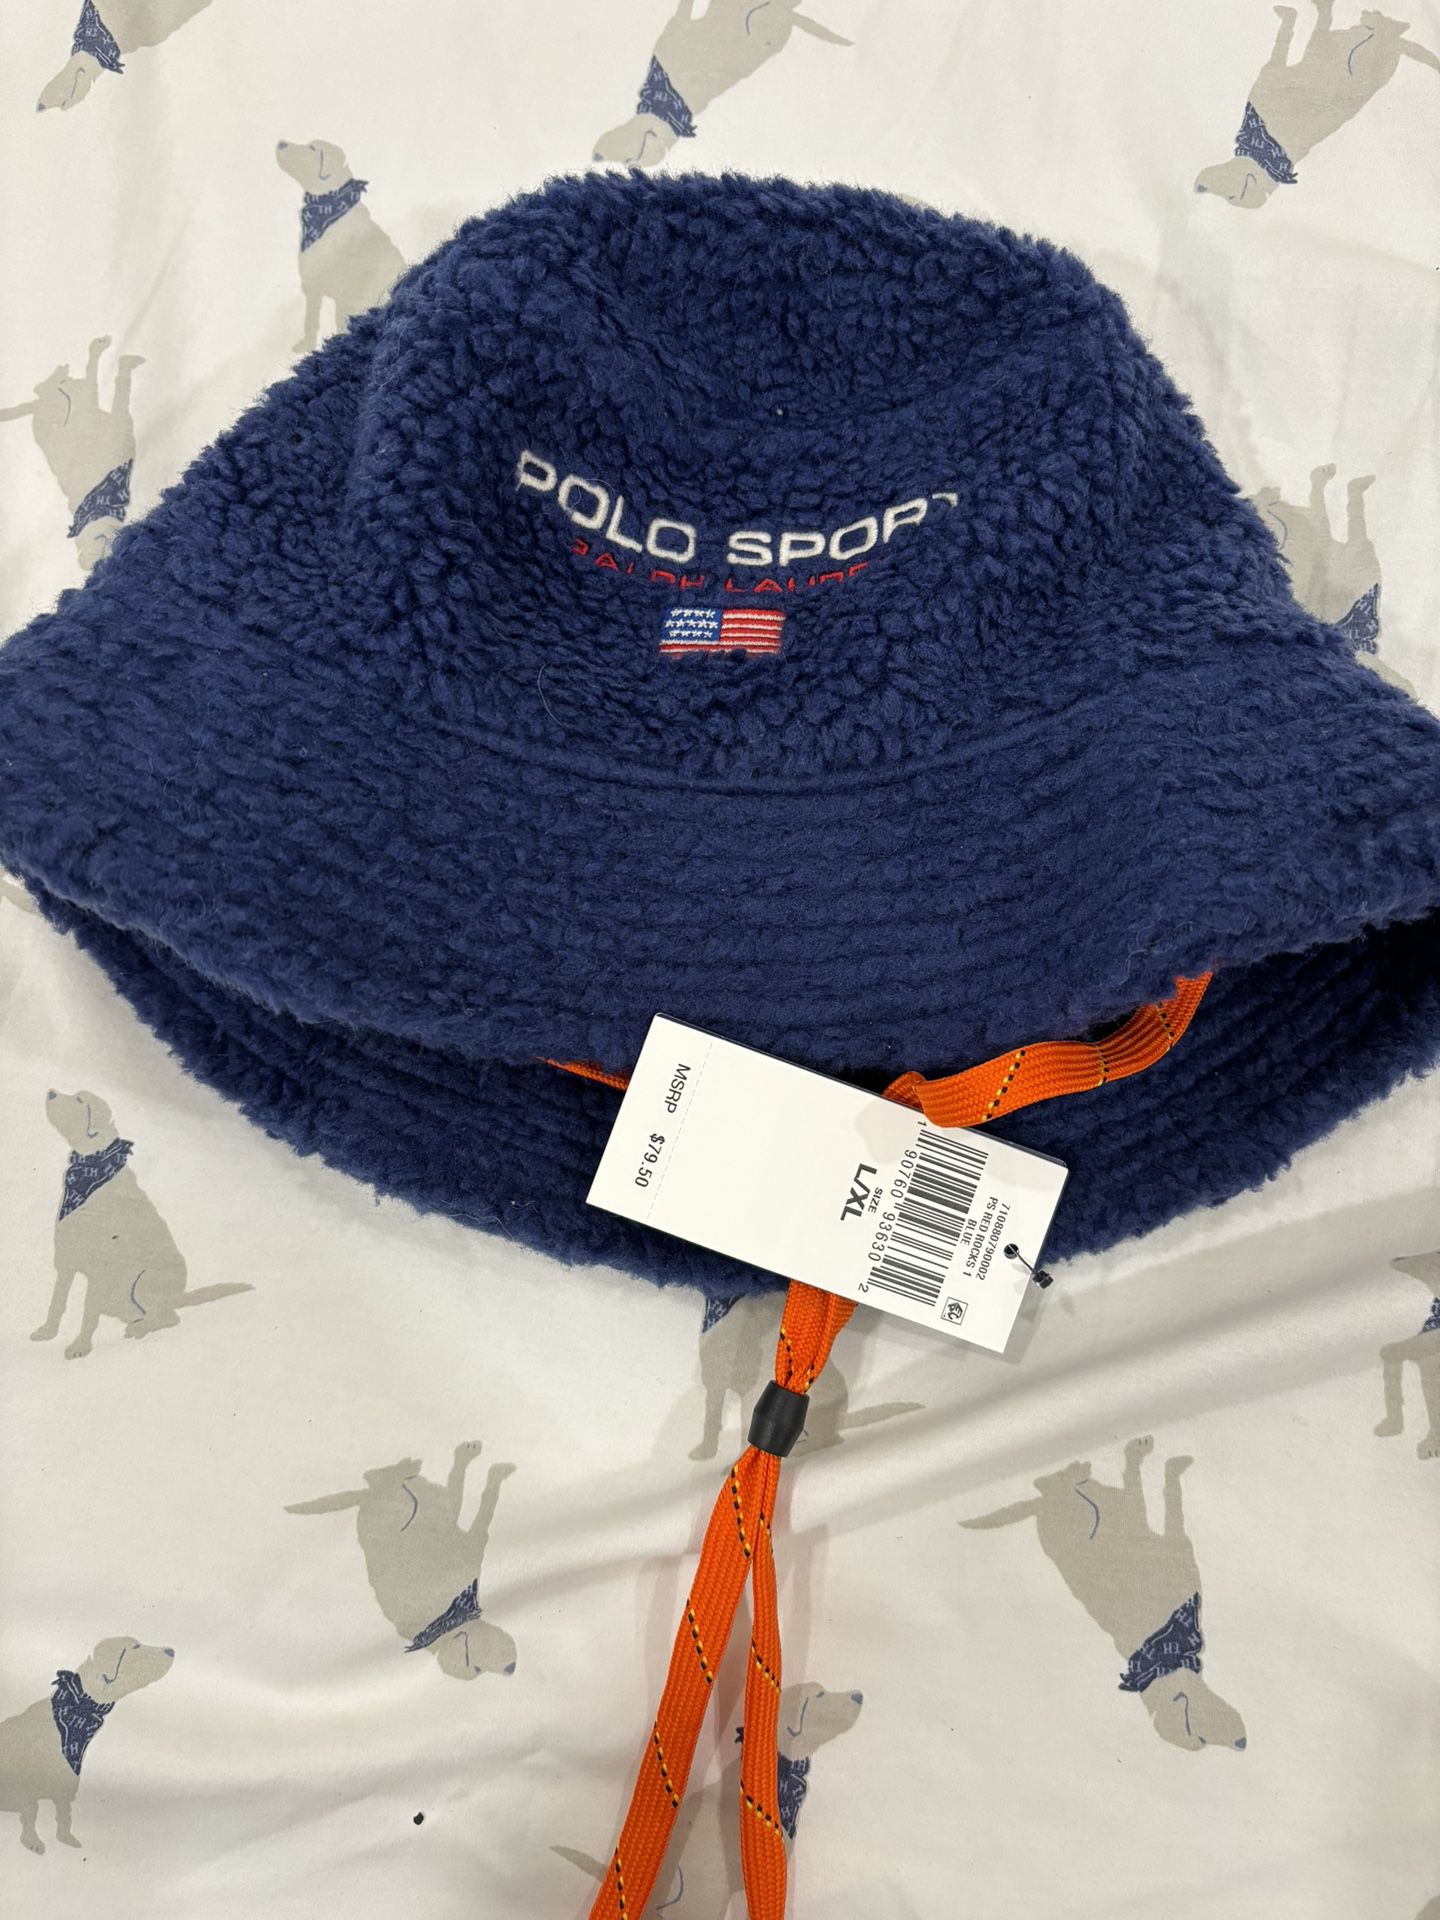 Polo sport Fleece Bucket Hat